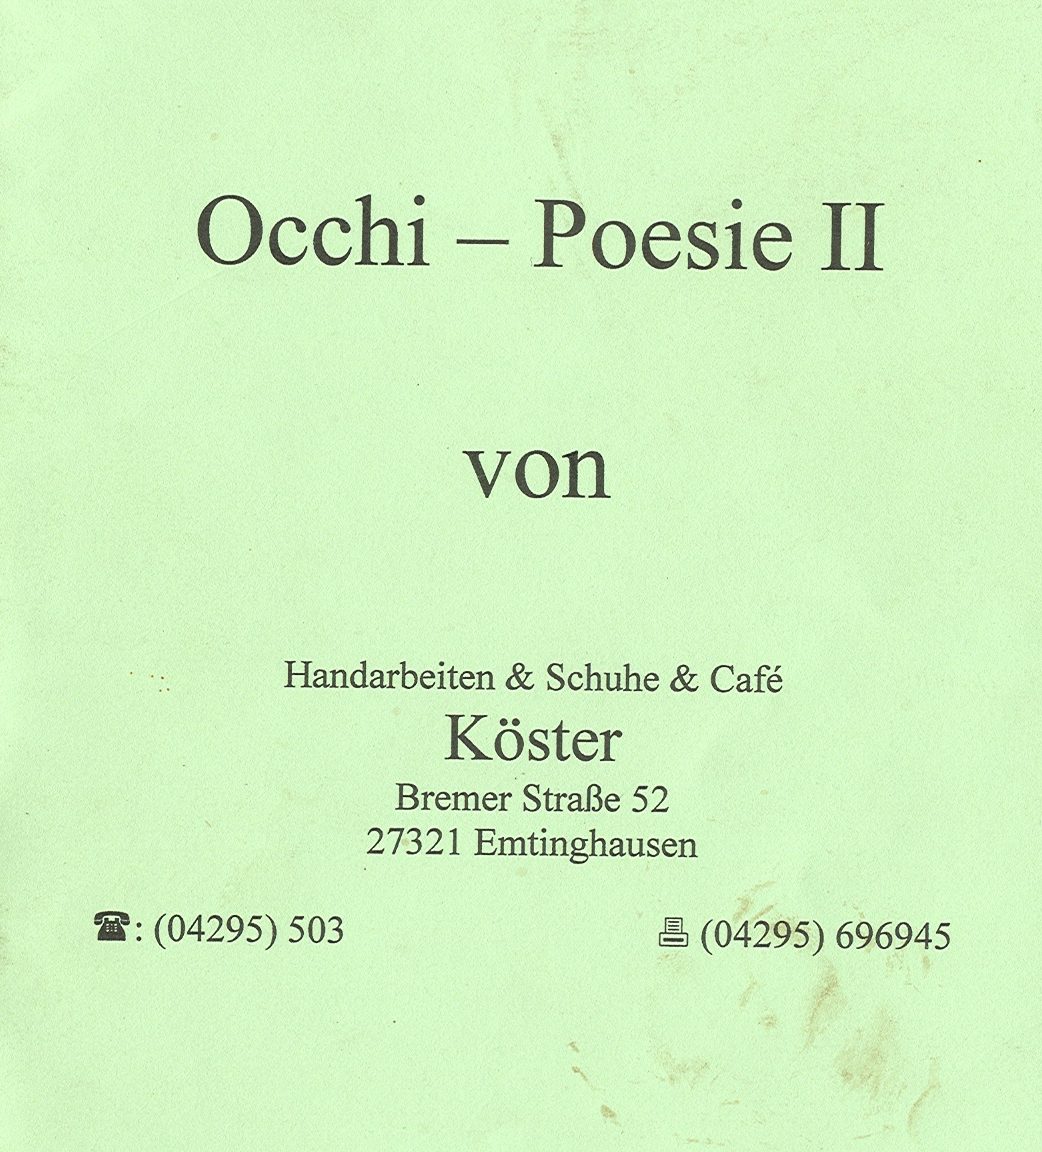 Occhi-Poesie